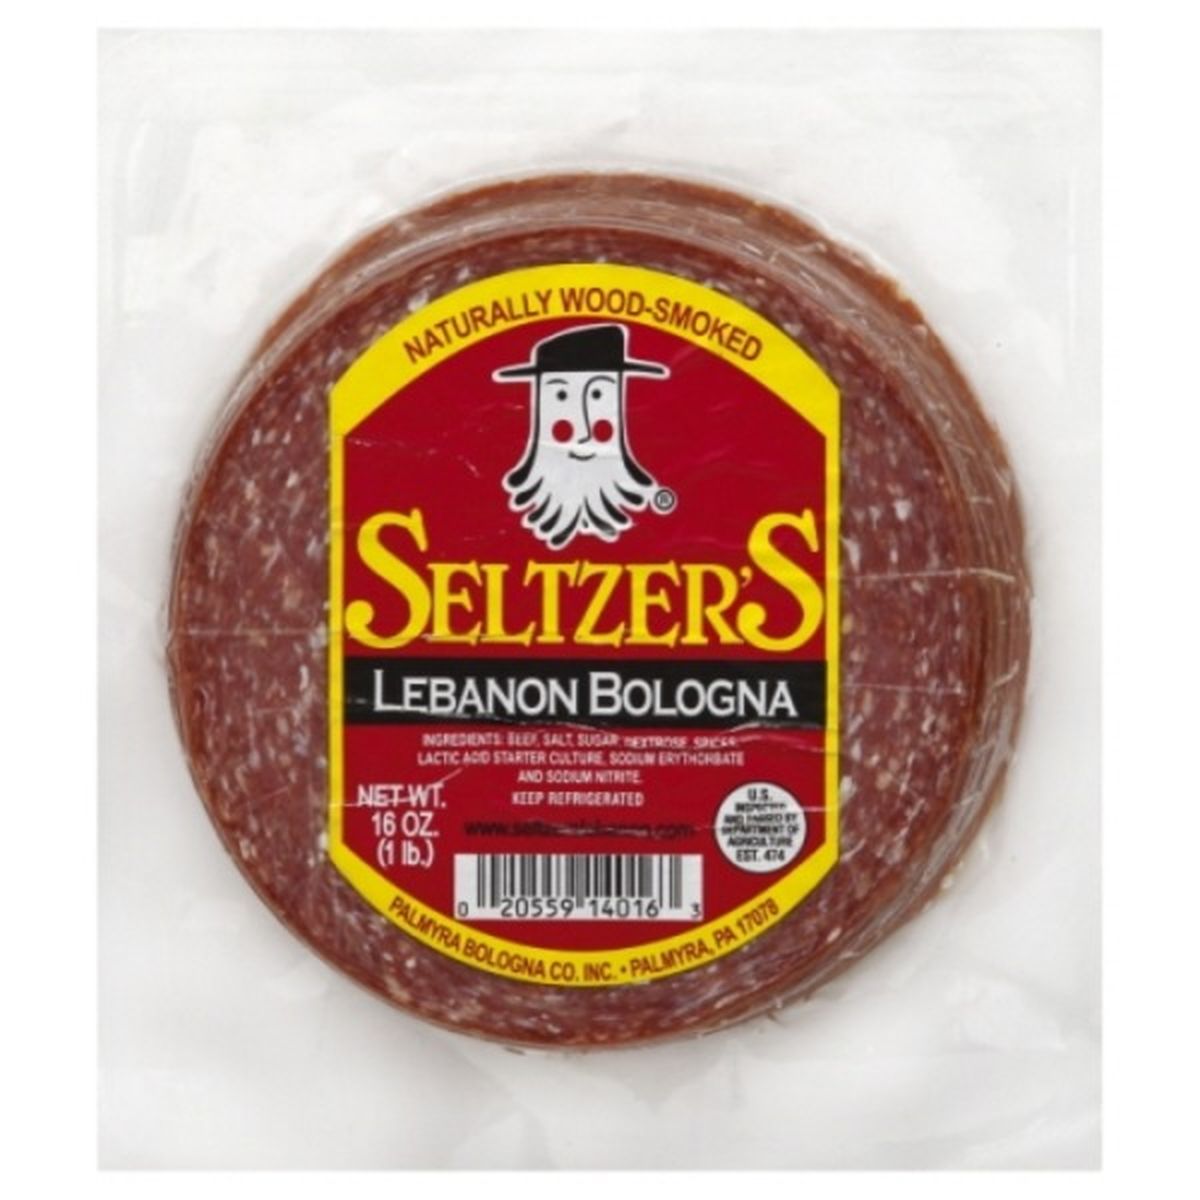 Calories in Seltzer's Bologna, Lebanon